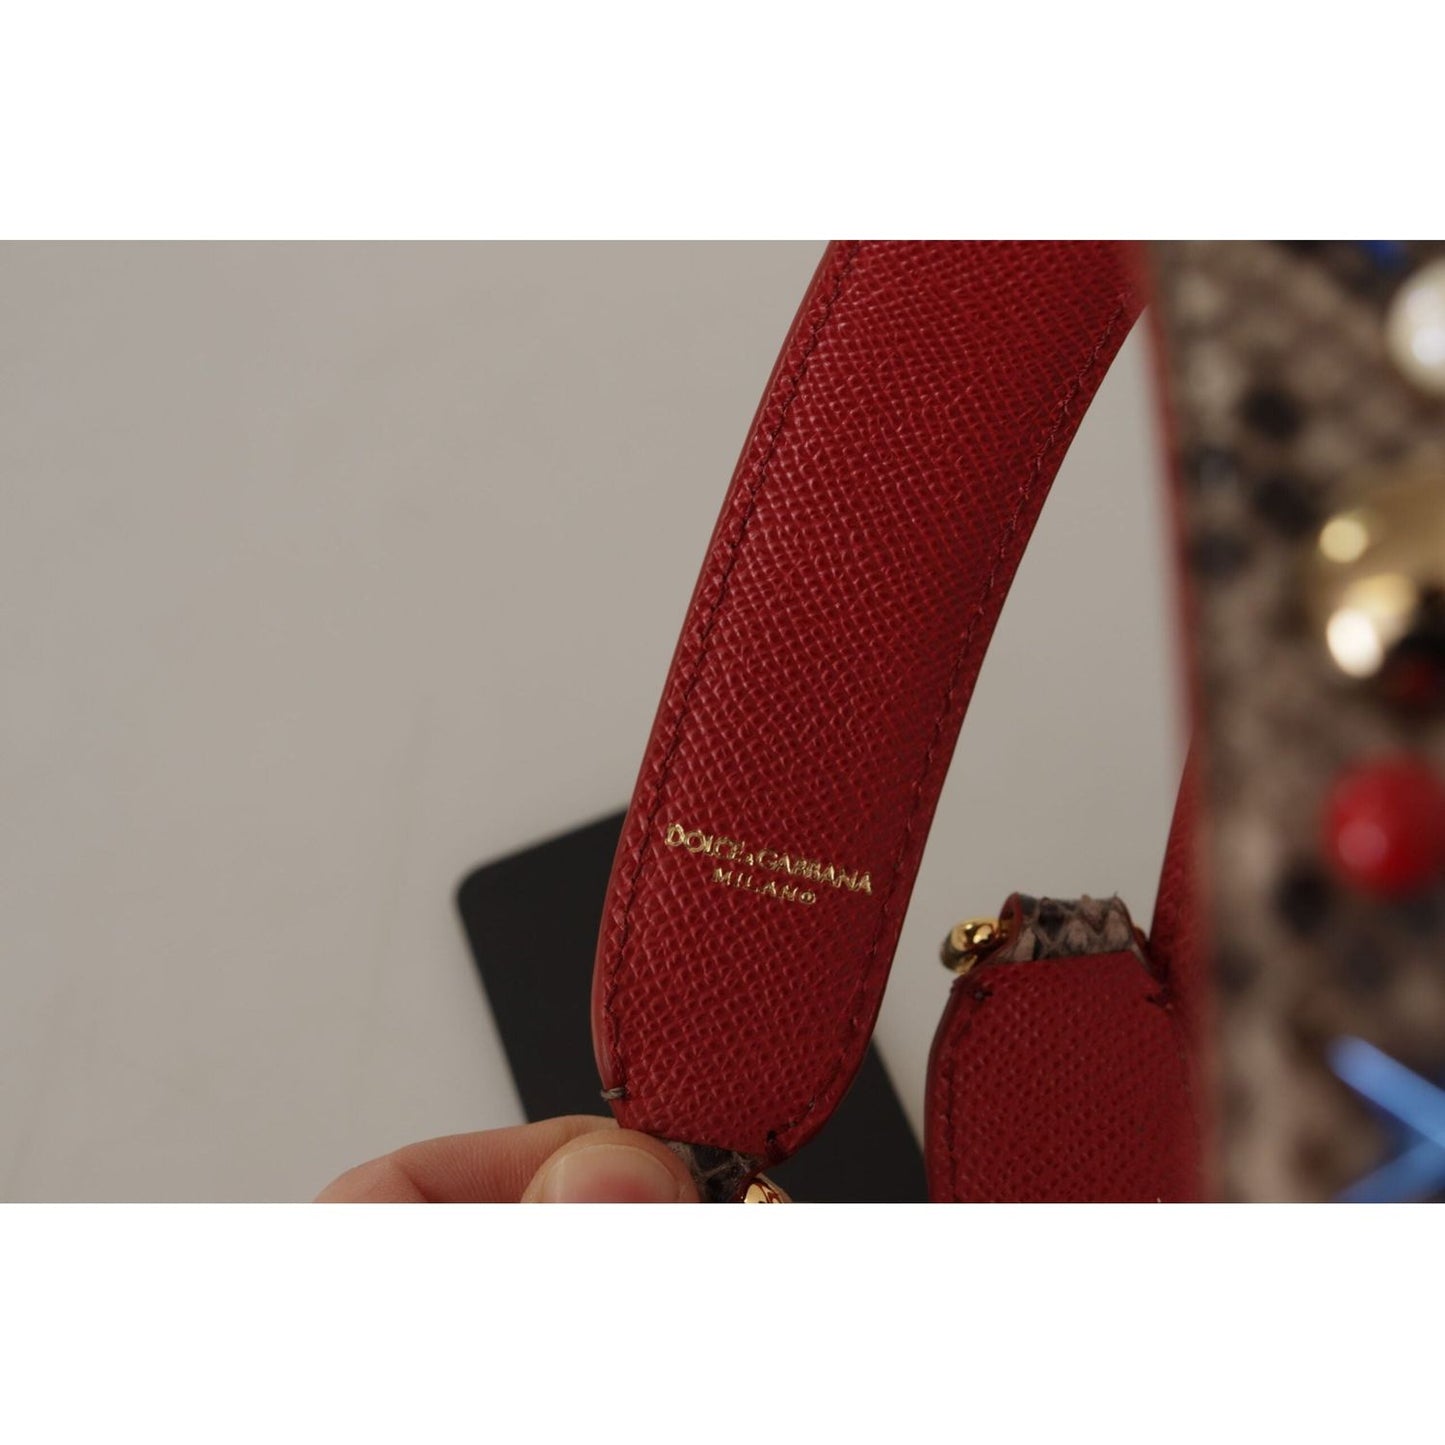 Dolce & Gabbana Elegant Python Leather Shoulder Strap brown-python-leather-studded-shoulder-strap IMG_9871-1-scaled-39446afa-435.jpg